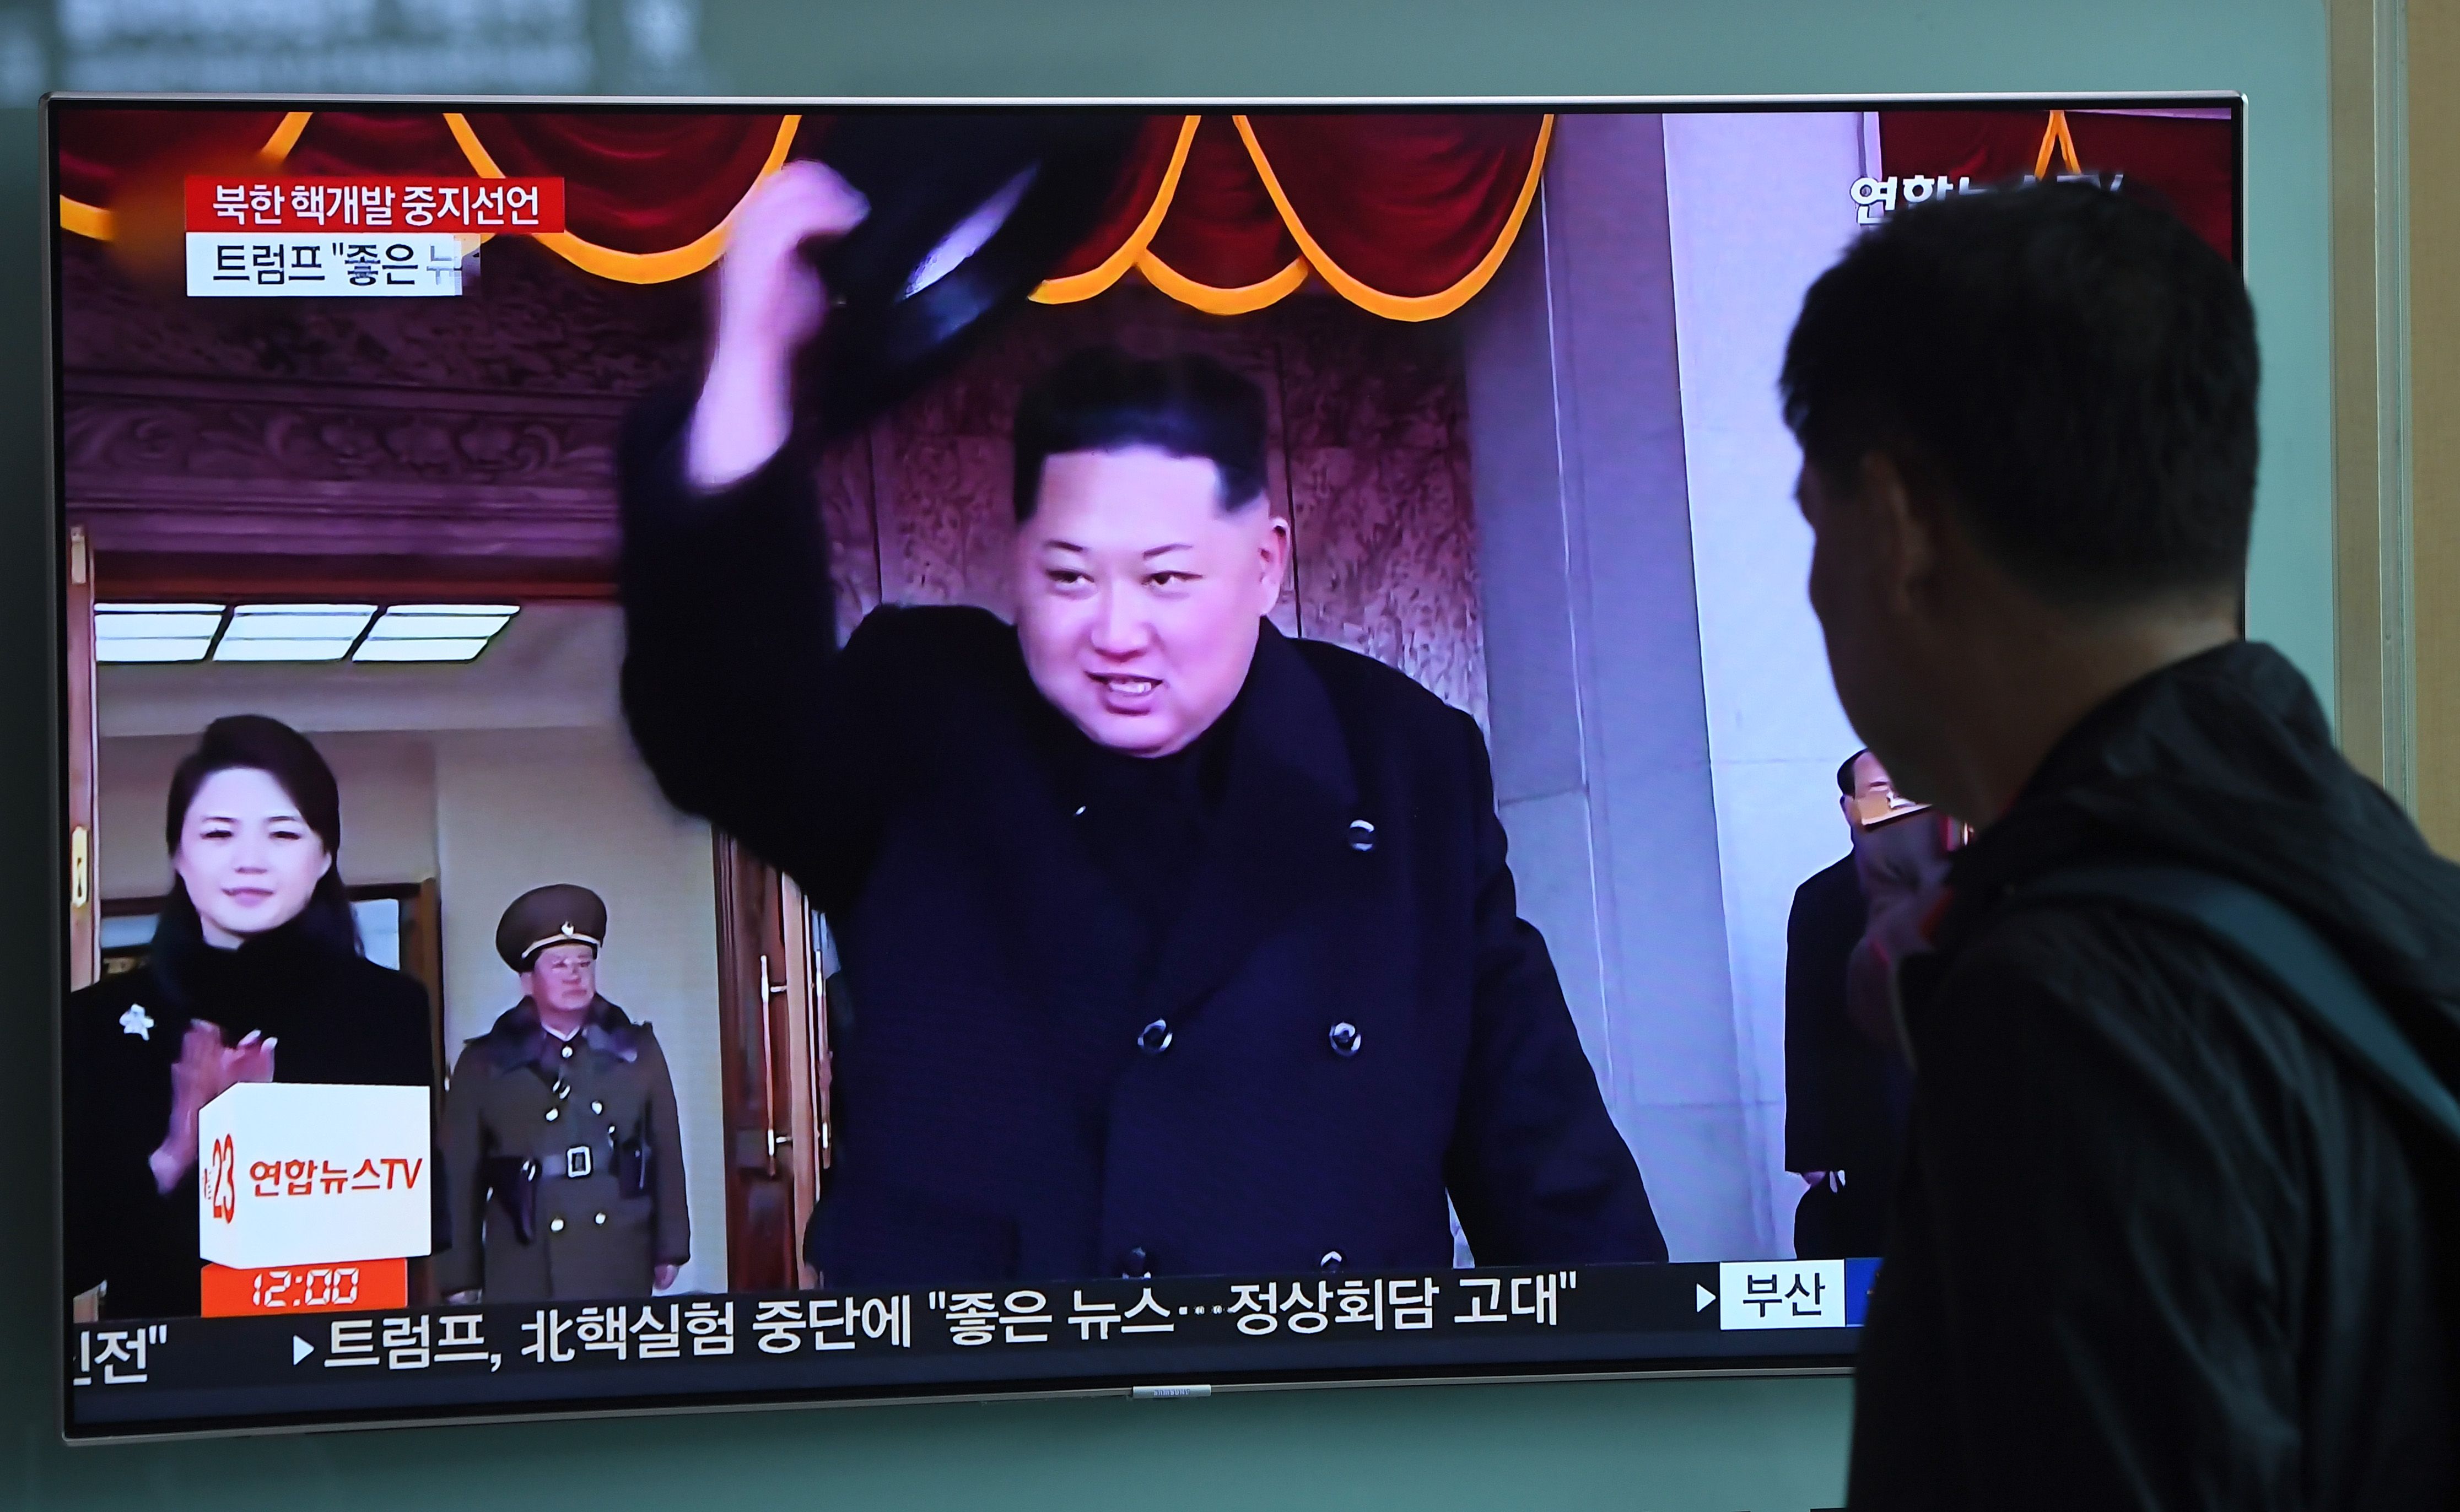 وسائل الاعلام فى كوريا الجنوبية تذيع بيان زعيم الشمال